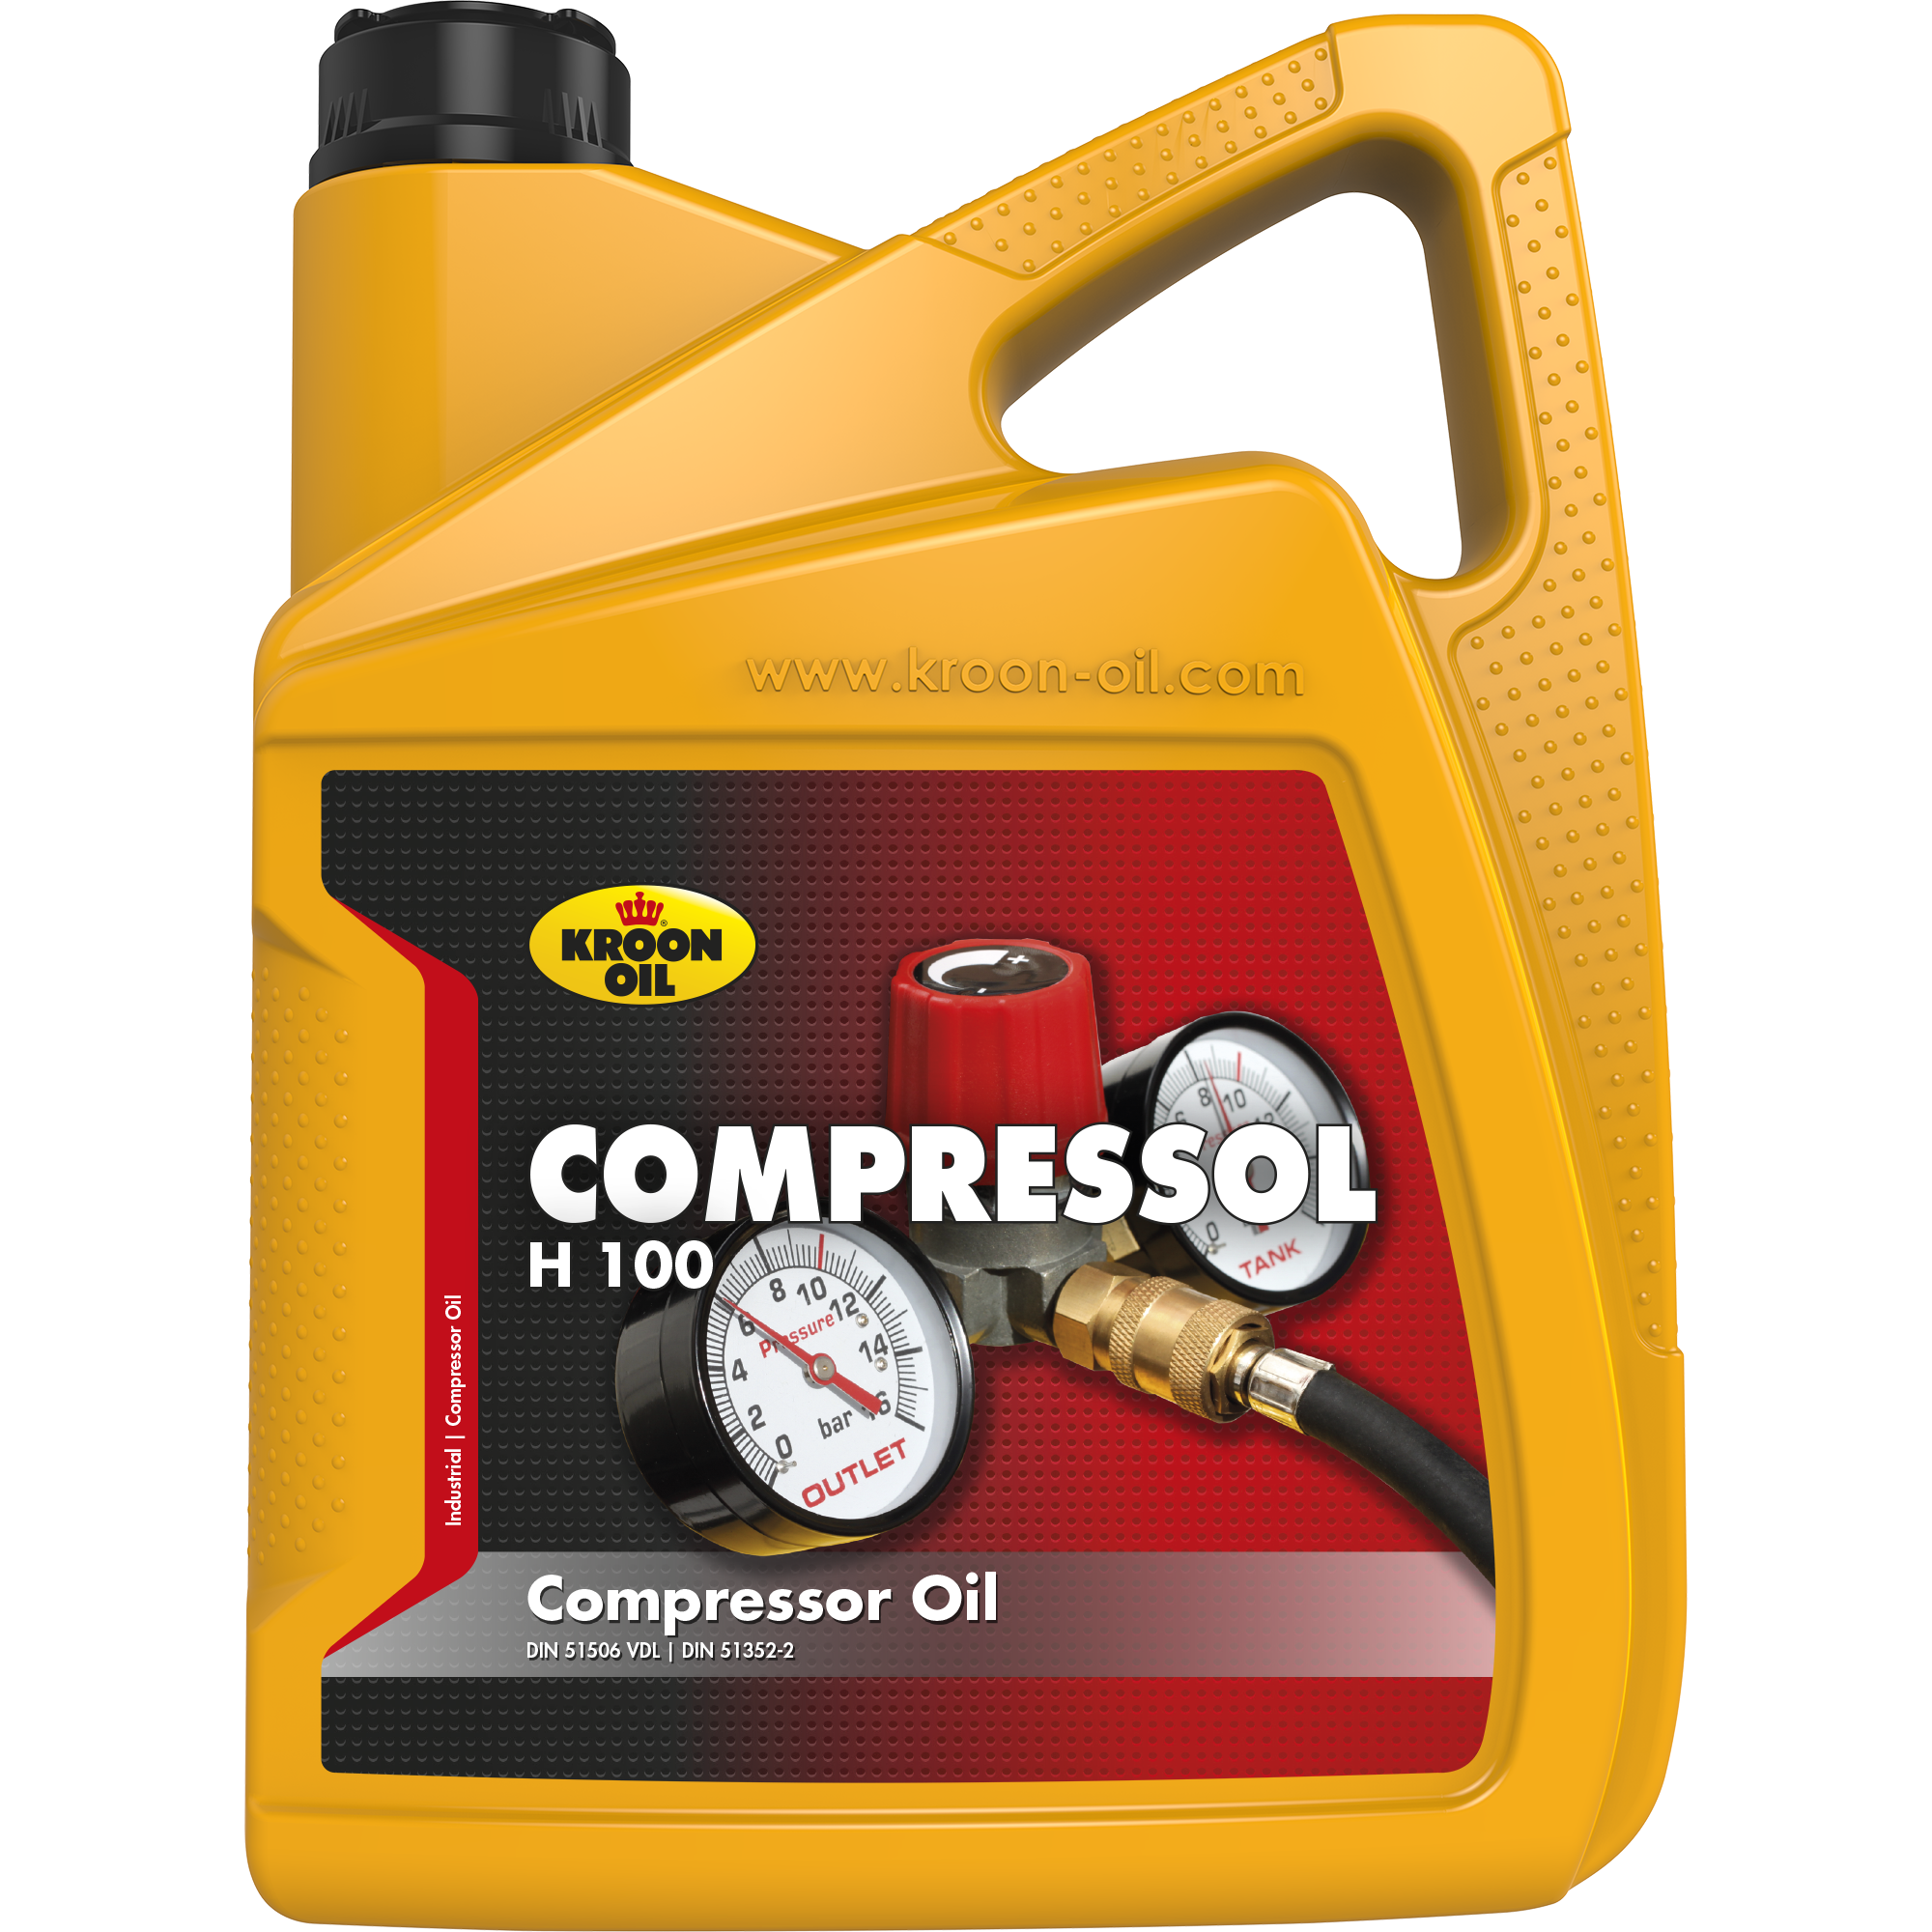 02321-5 Compressol H 100 is een compressorolie gebaseerd op zeer hoog doorgeraffineerde basisolie, met van nature een hoge weerstand tegen veroudering.